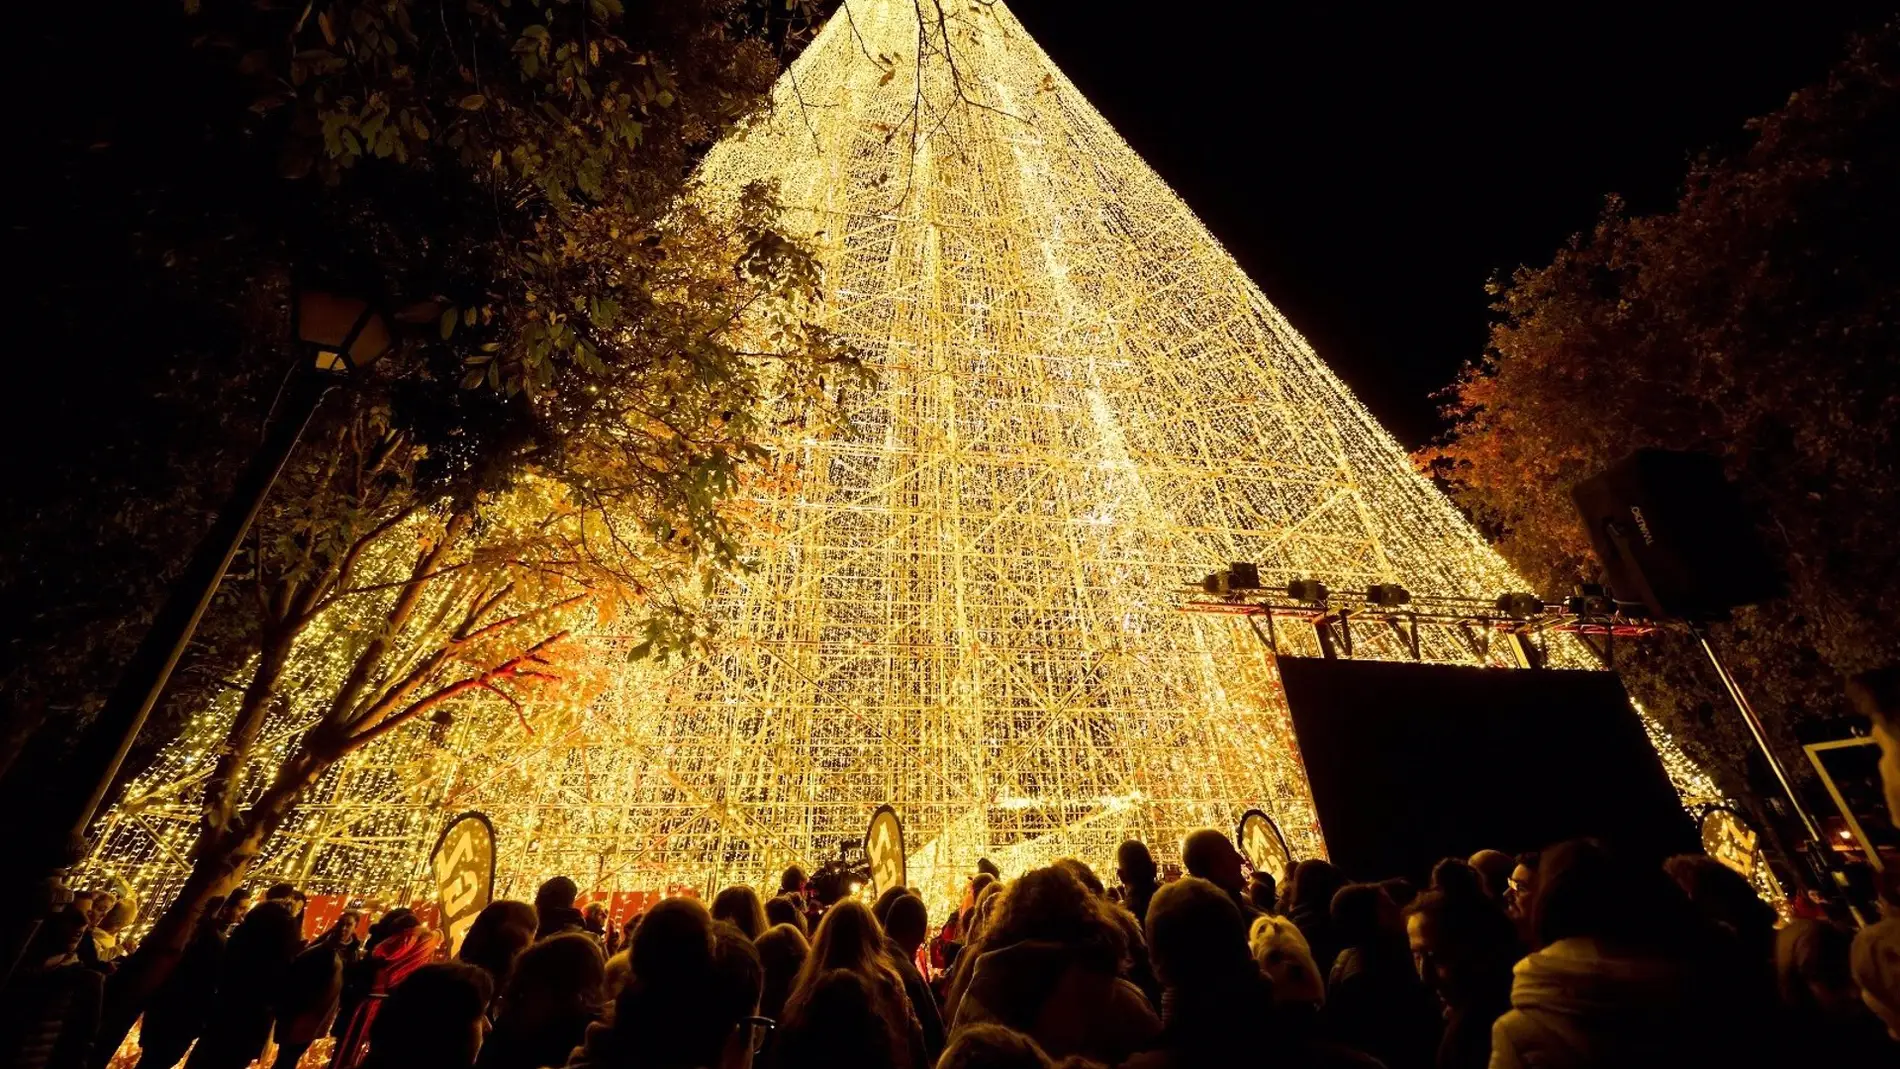 Cartes da la bienvenida a la Navidad con el árbol más alto de Europa | Onda  Cero Radio